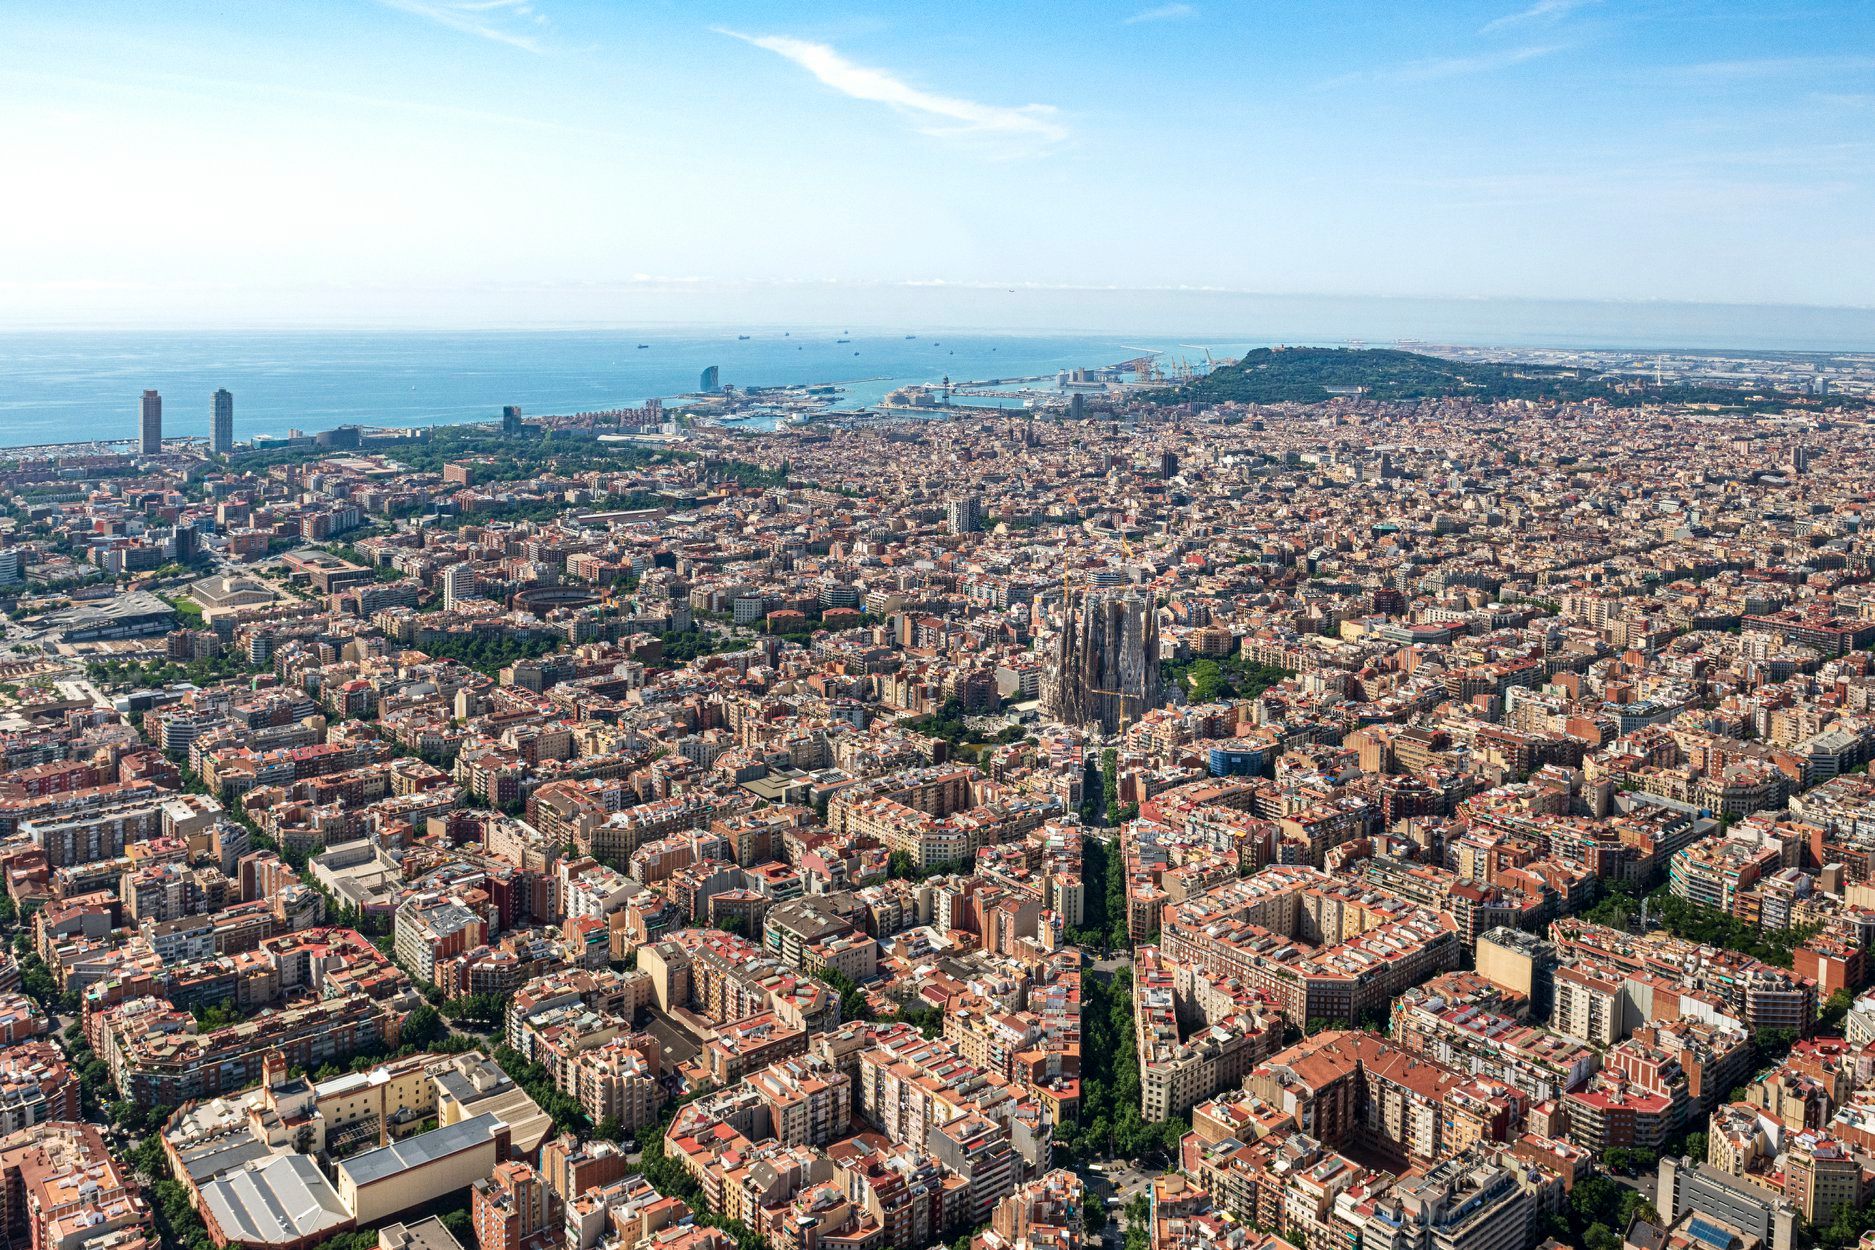 Sagrada Família wins global award for Most Remarkable Venue